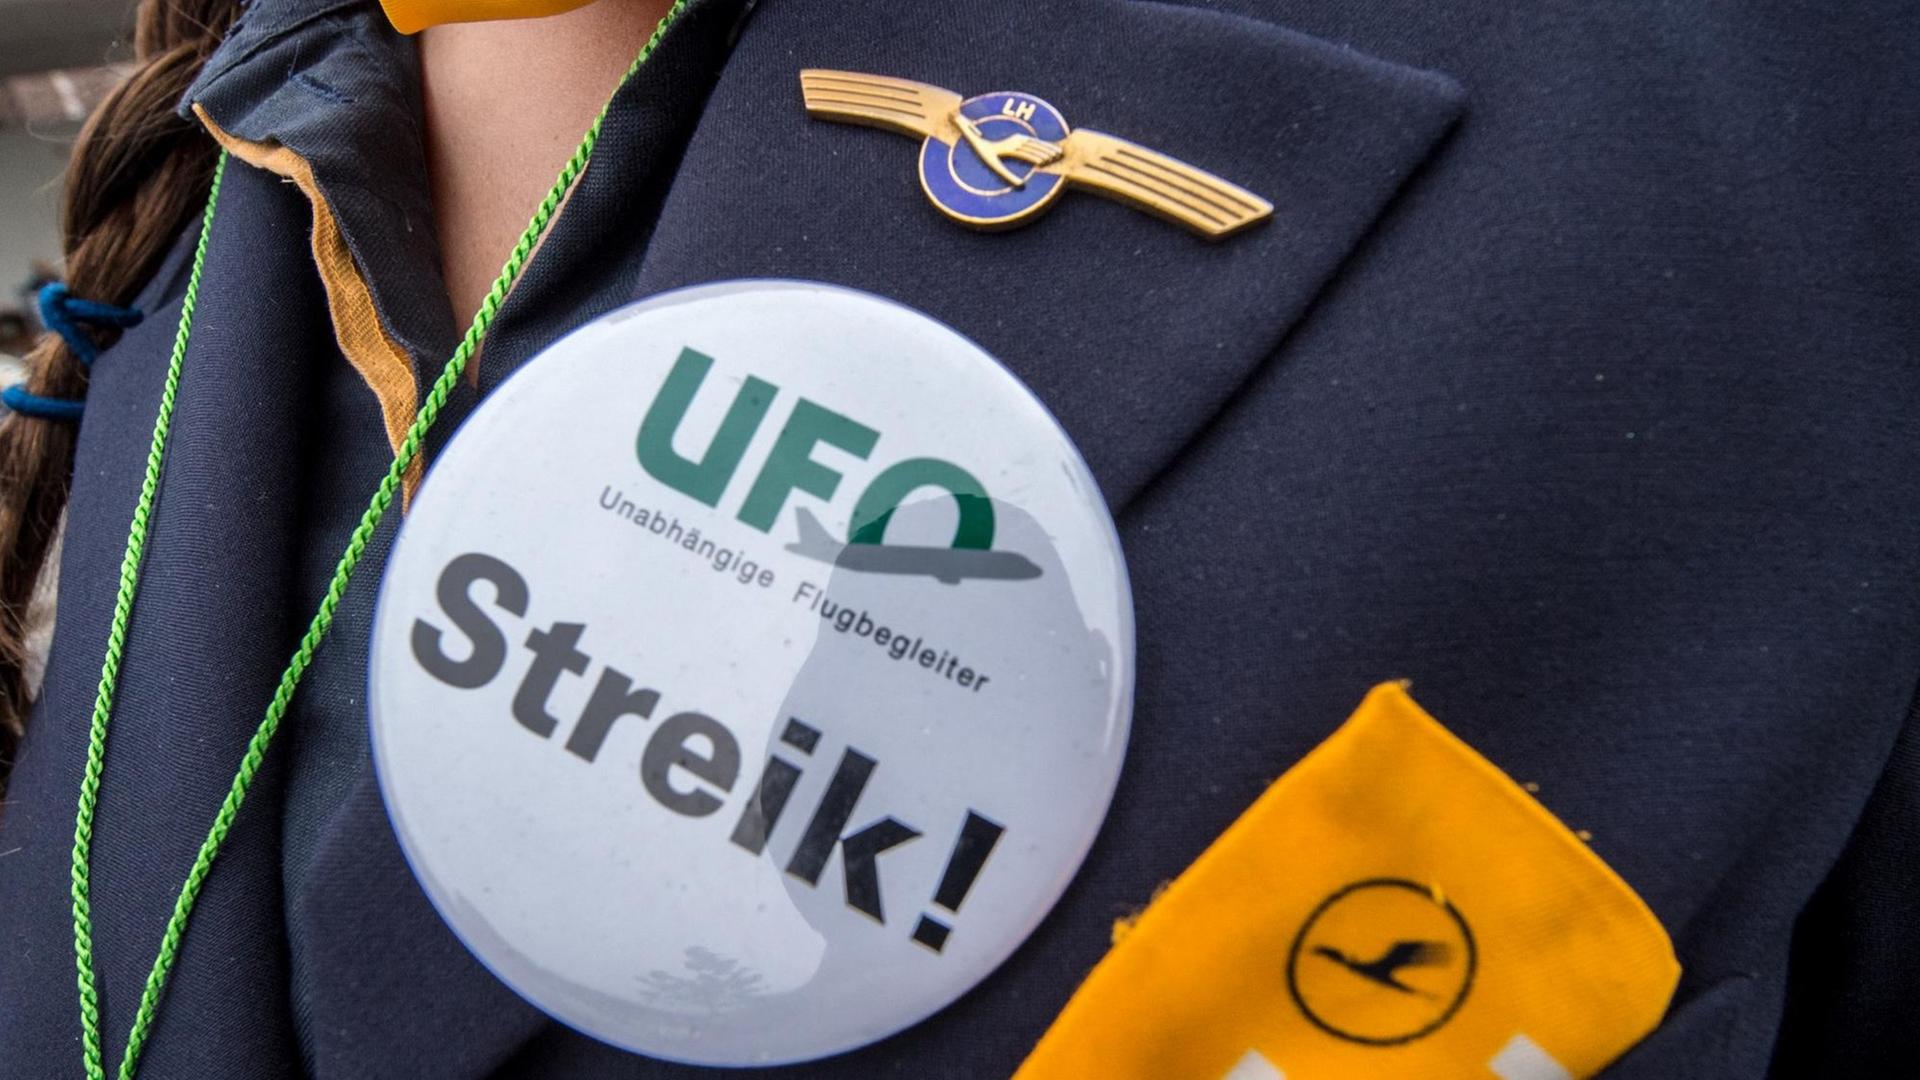 Ein Button mit der Aufschrift "UFO. Streik" ist auf der Uniform eine Flugbegleiterin zu sehen.